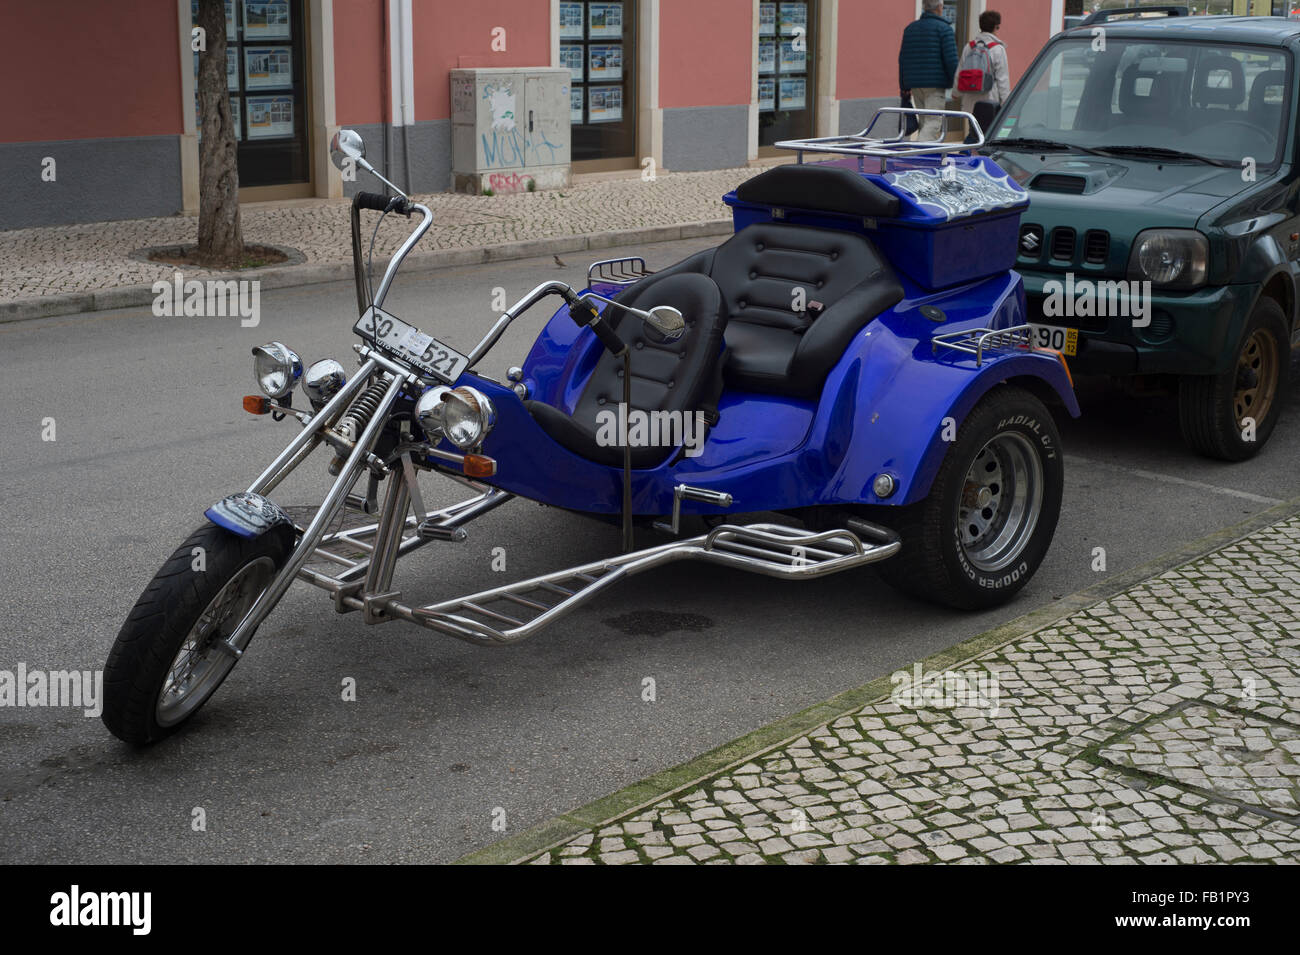 Trike motorbike immagini e fotografie stock ad alta risoluzione - Alamy